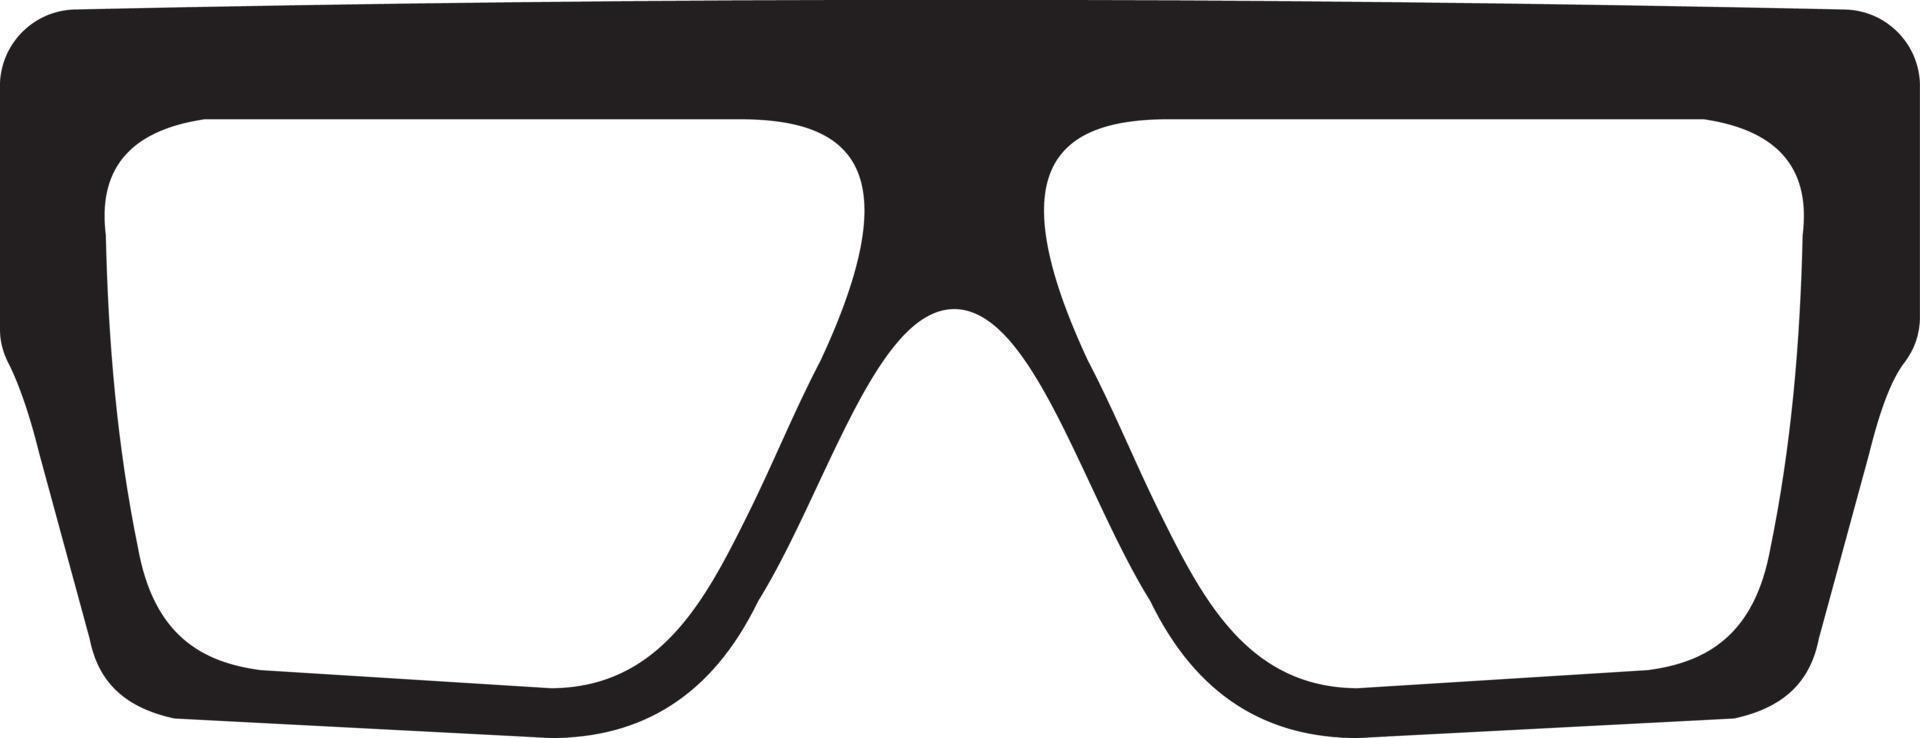 Sunglasses square vector